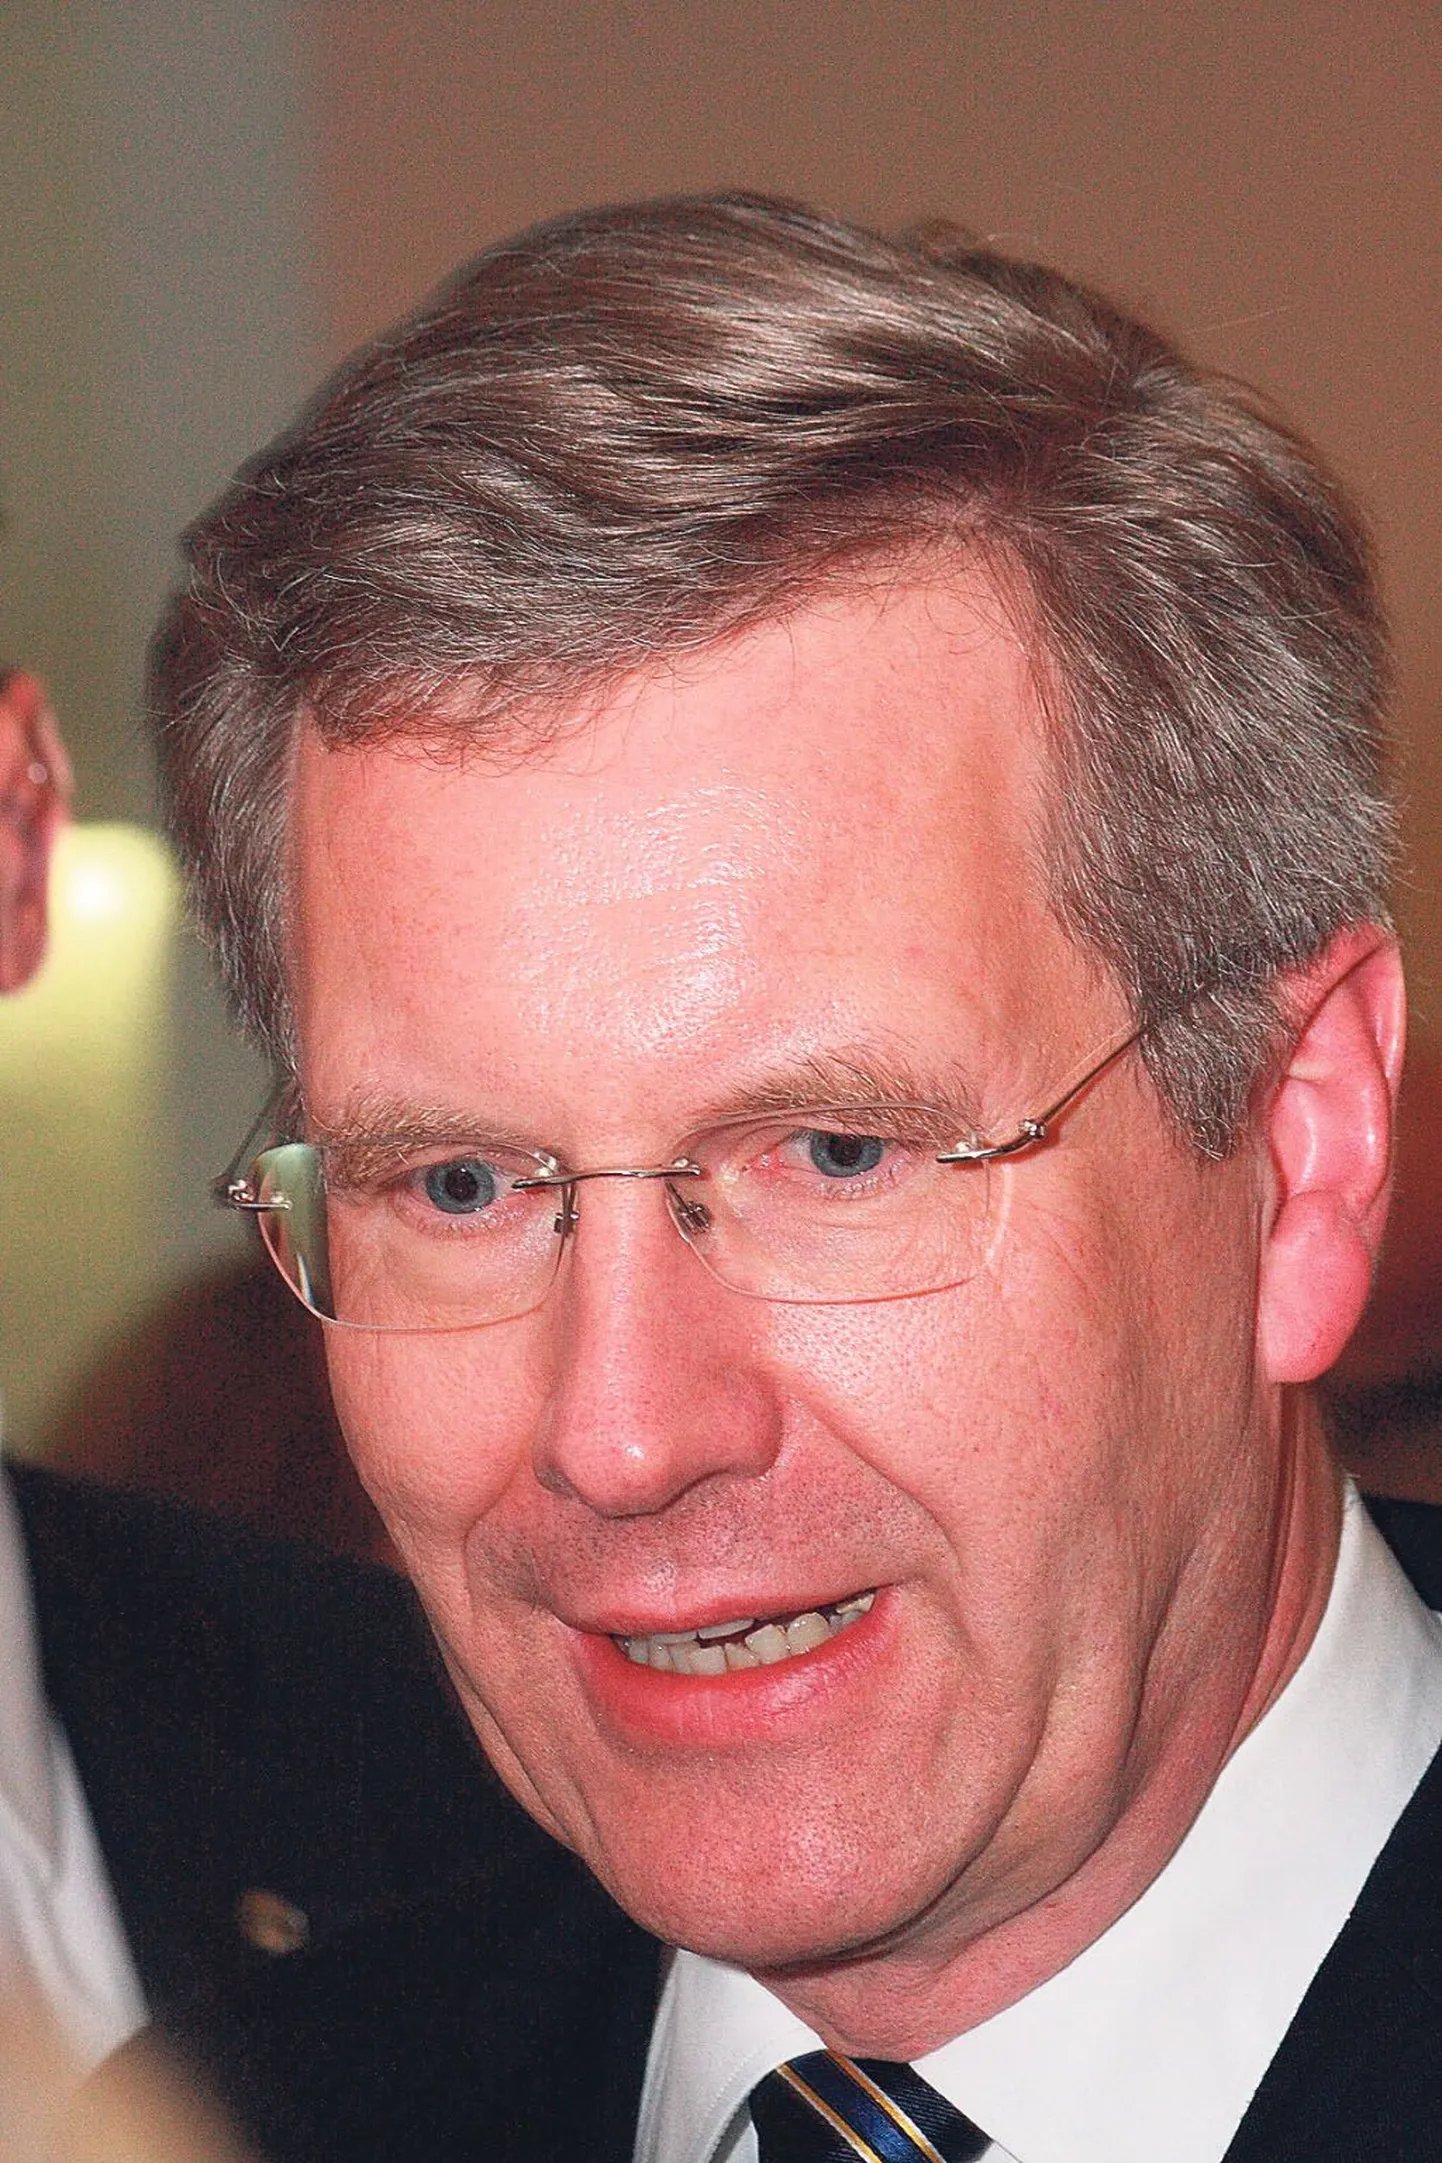 Christian Wulff muutus presidendina sakslaste naerualuseks. Kuuldavasti olevat liidukantsleri amet kaikunud Angela Merkeli vihakisast: niivõrd ei soovinud ta Joachim Gaucki (teisel pildil vasakul) uueks presidendikandidaadiks.